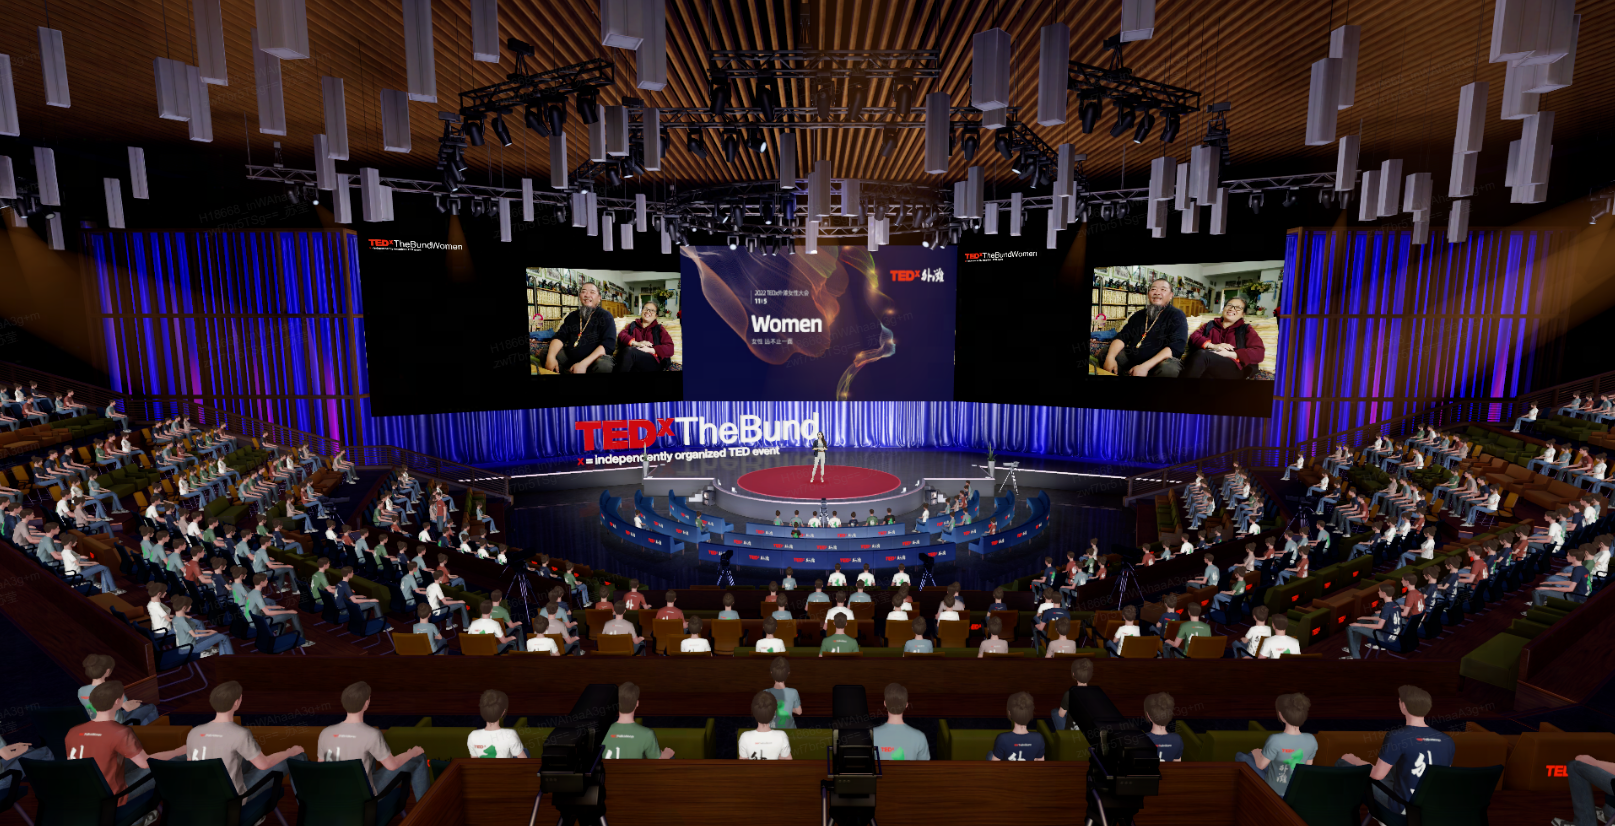 这是一张TEDx活动的图片，演讲者站在舞台中央，观众坐在会场内，场内装饰现代，气氛庄重而专注。